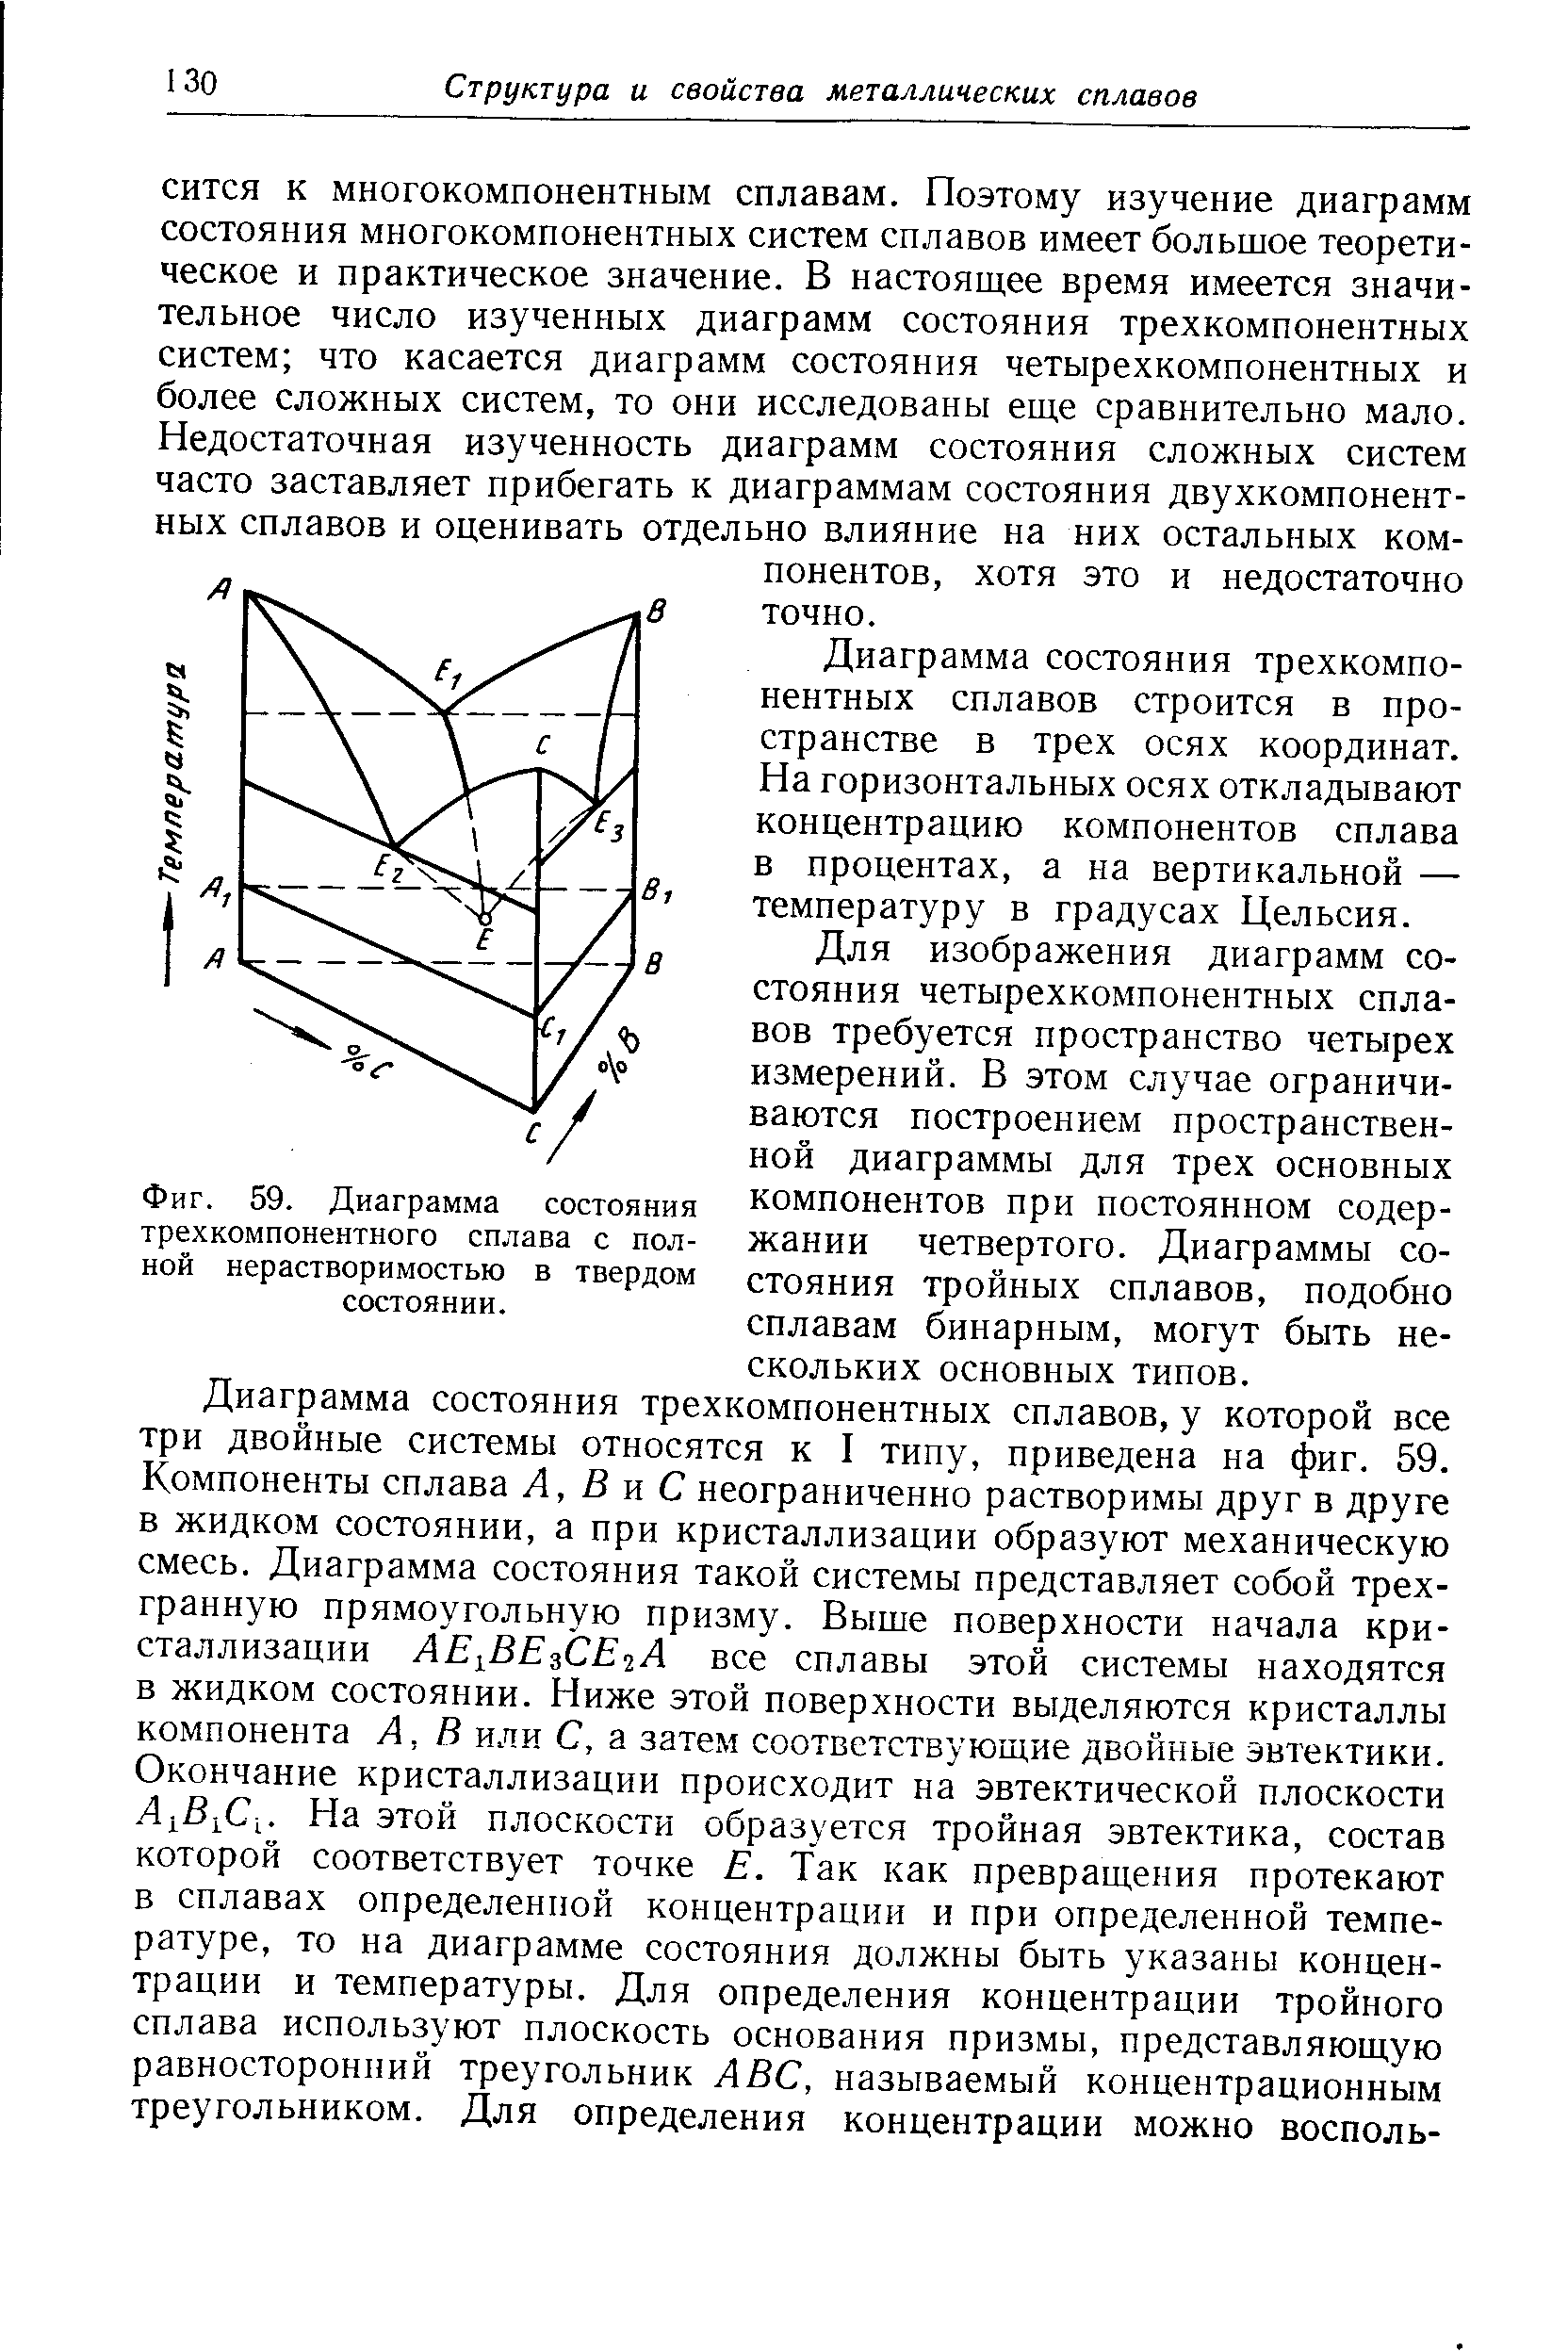 Фиг. 59. Диаграмма состояния трехкомпонентного сплава с полной нерастворимостью в твердом состоянии.
